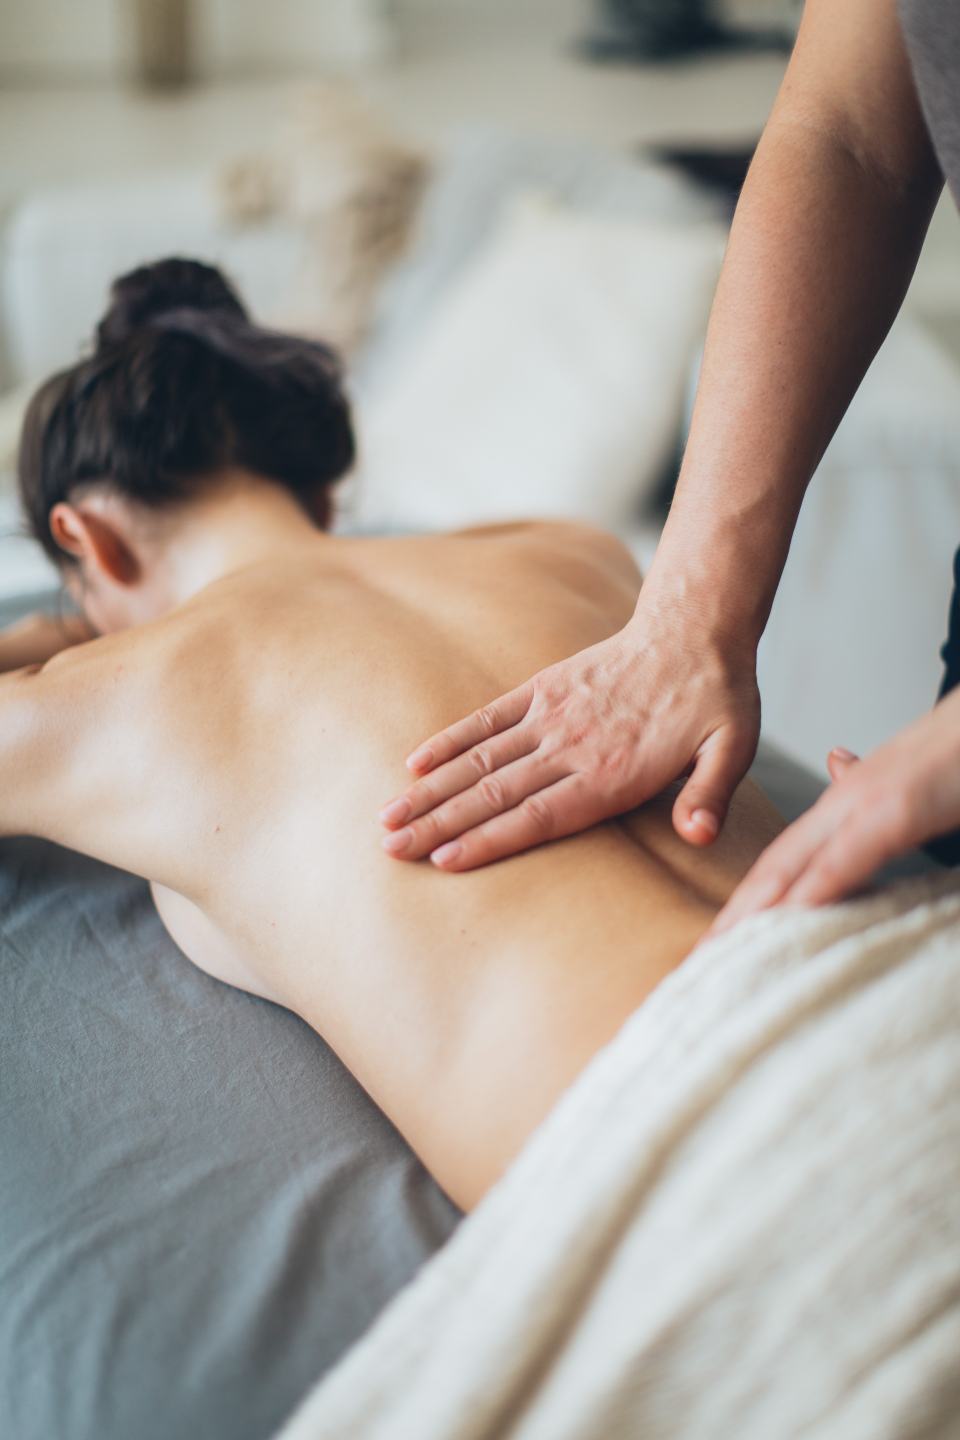 Haut Auf Haut – Die Nackte Massage Teil 1